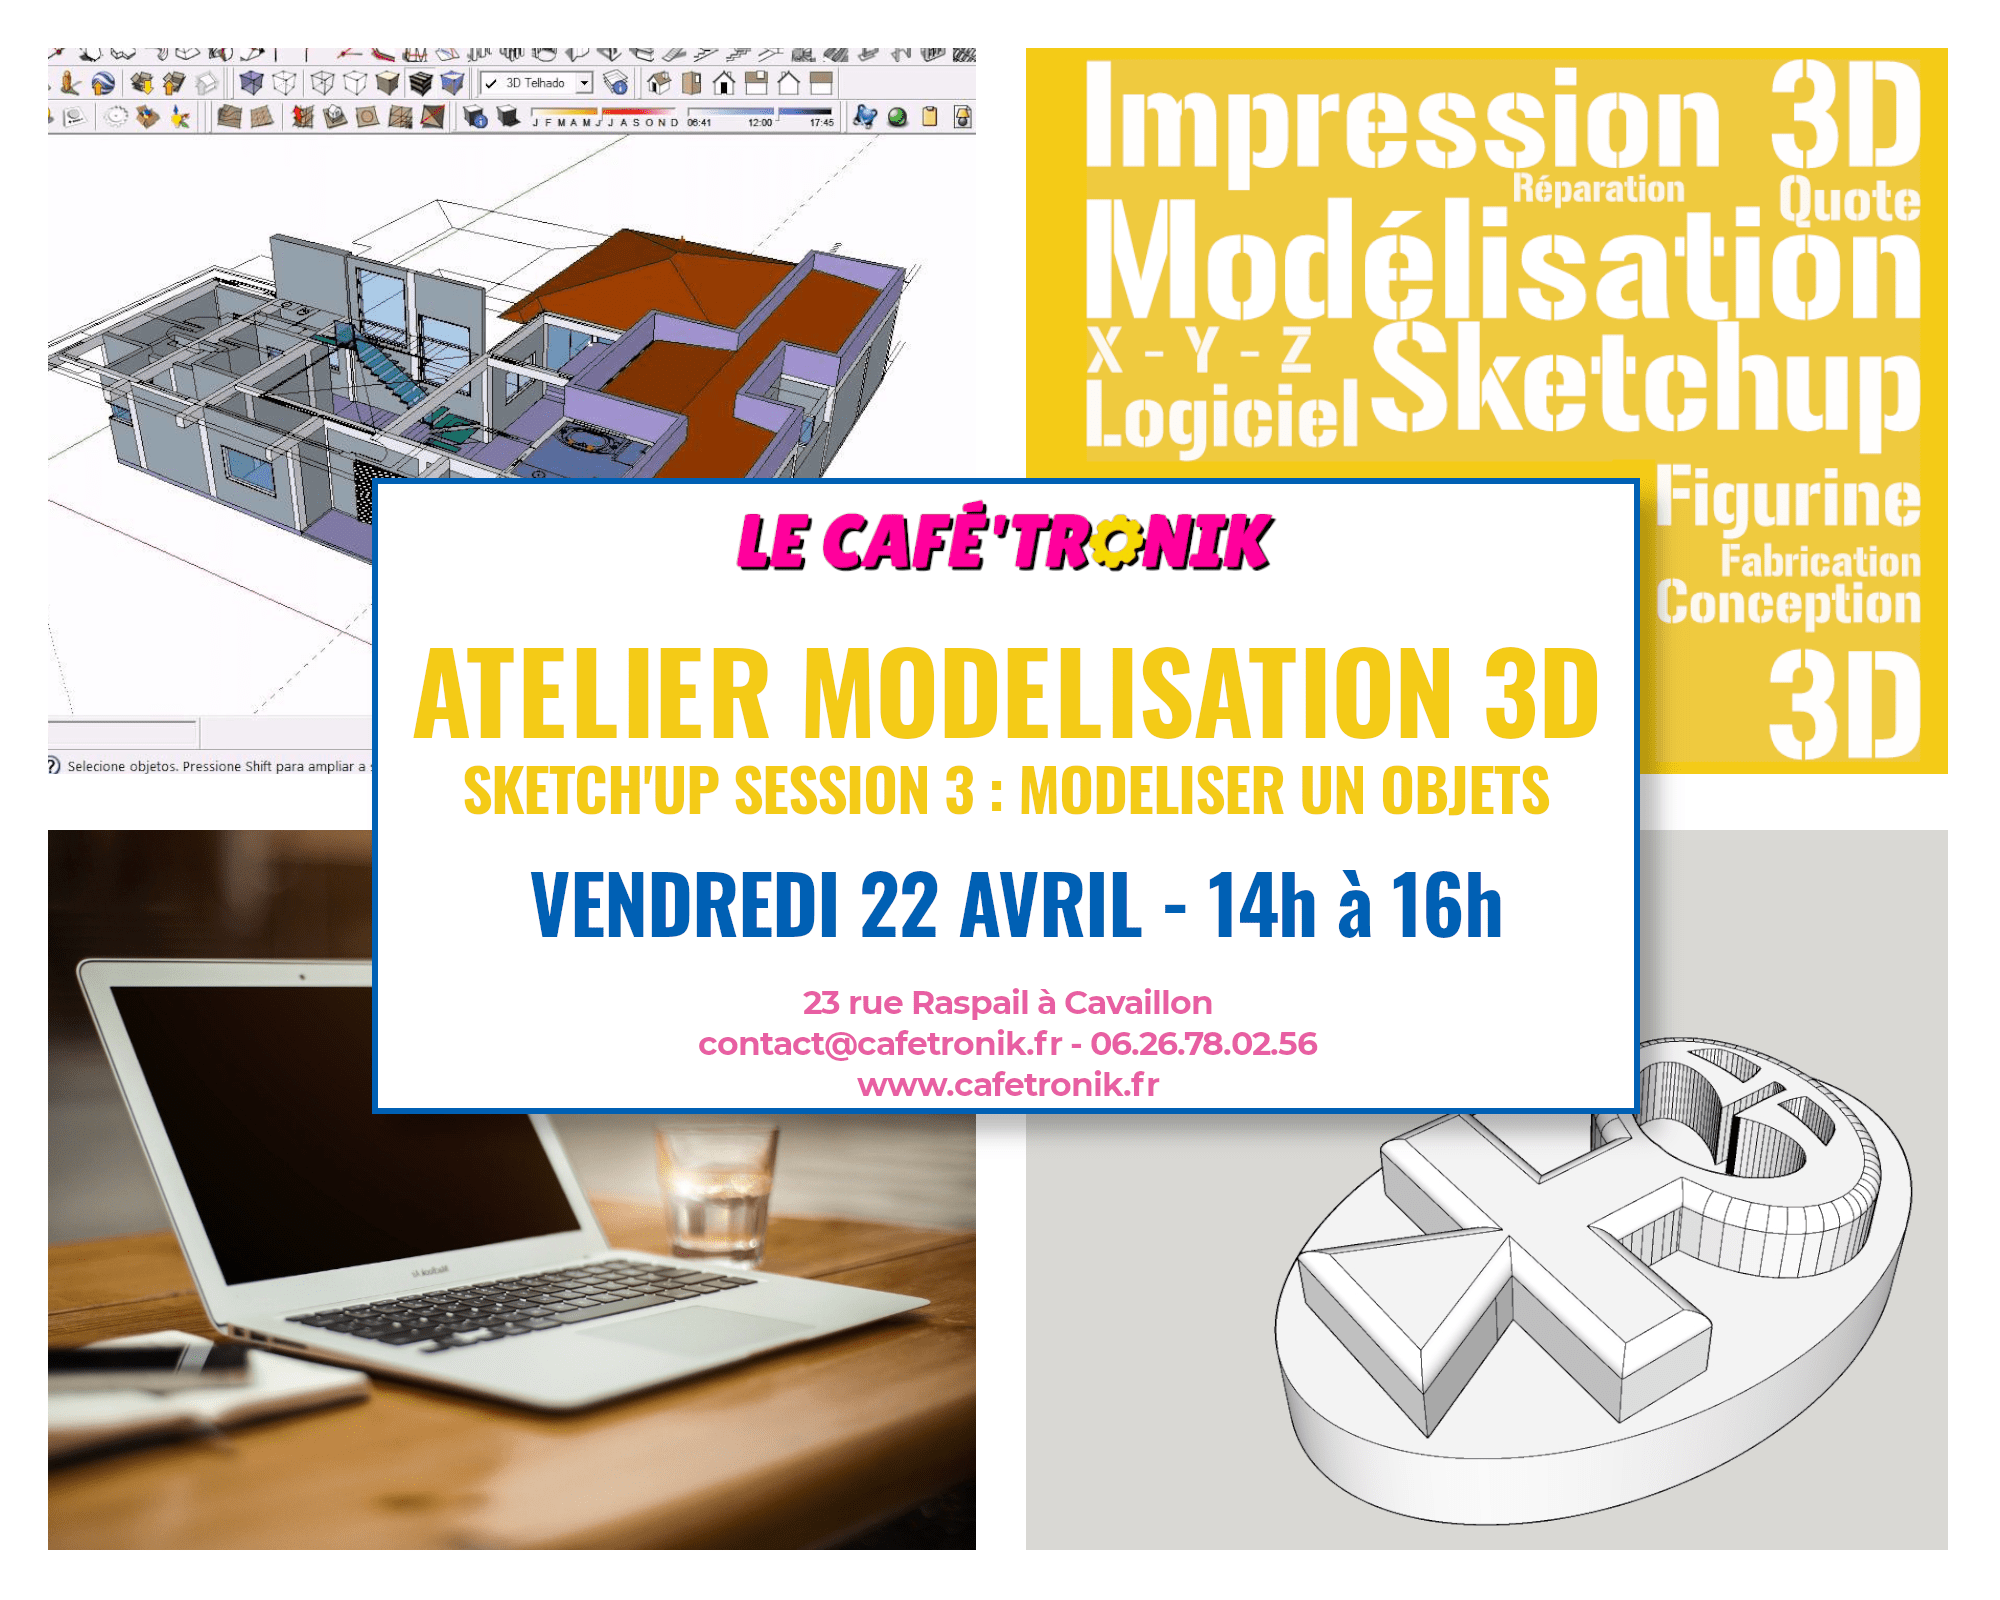 Lire la suite à propos de l’article Atelier Modélisation 3D avec Sketch’Up – Session 3